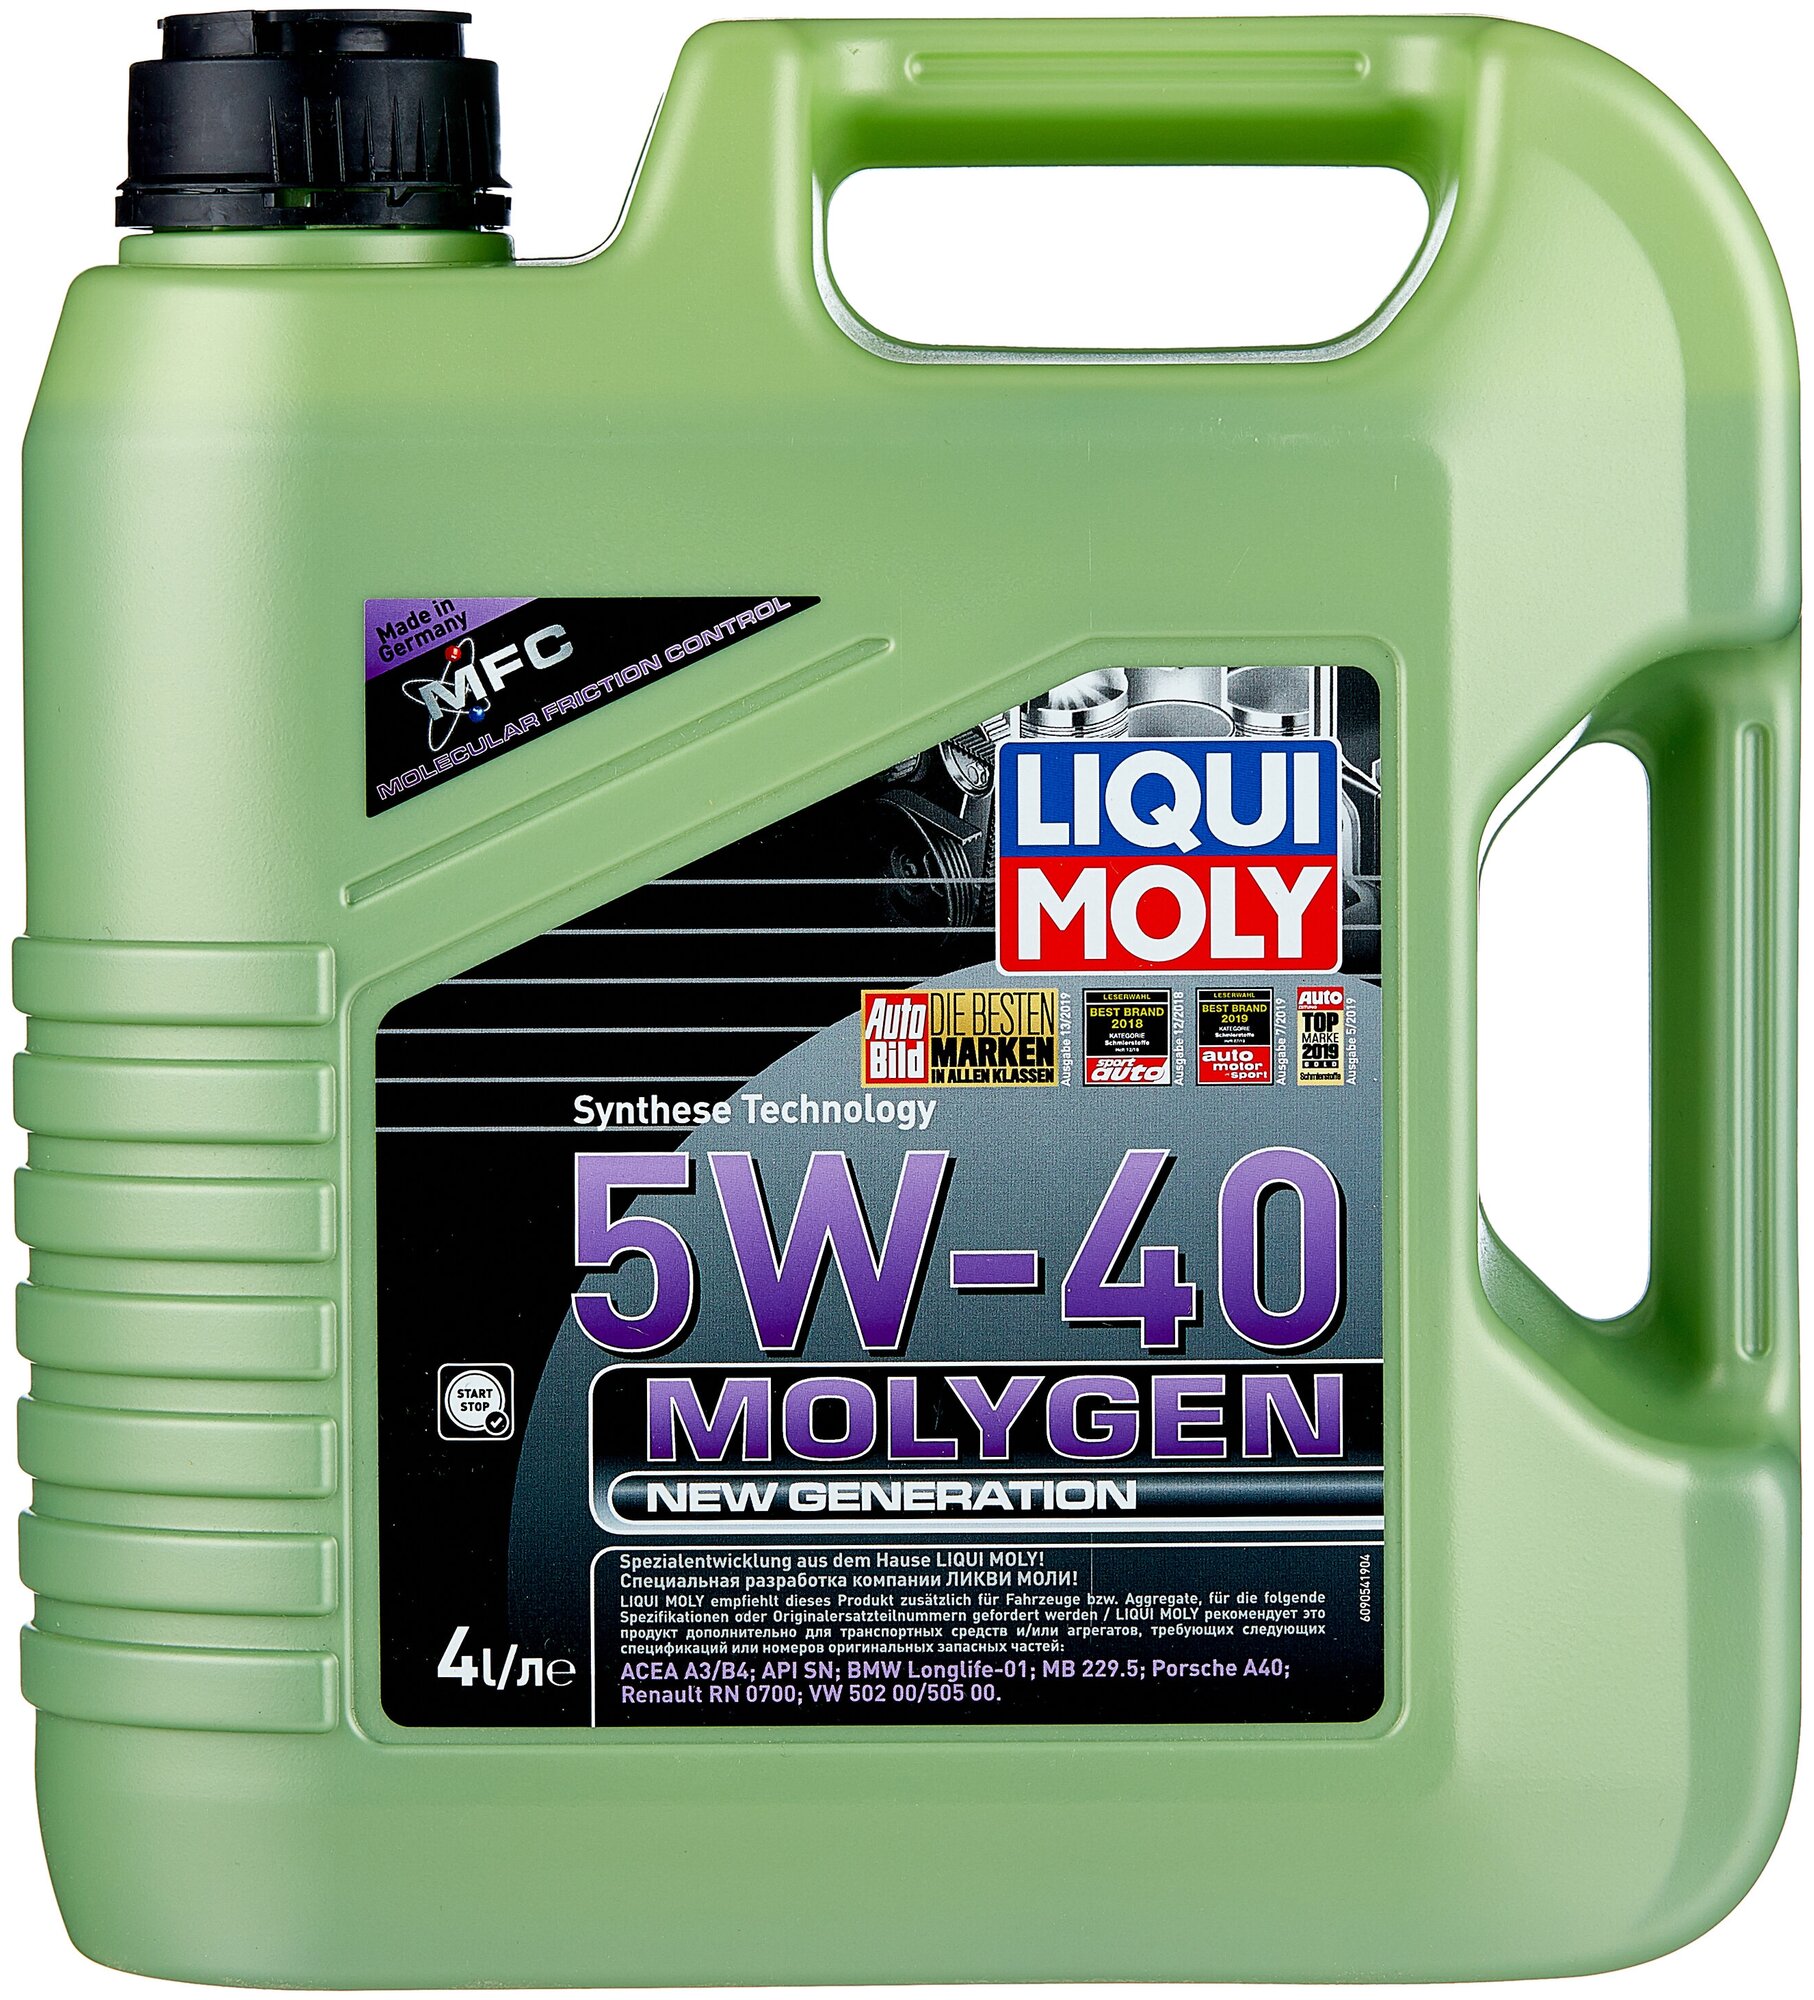   Liqui Moly Molygen New Generation 5W-40 - 4 